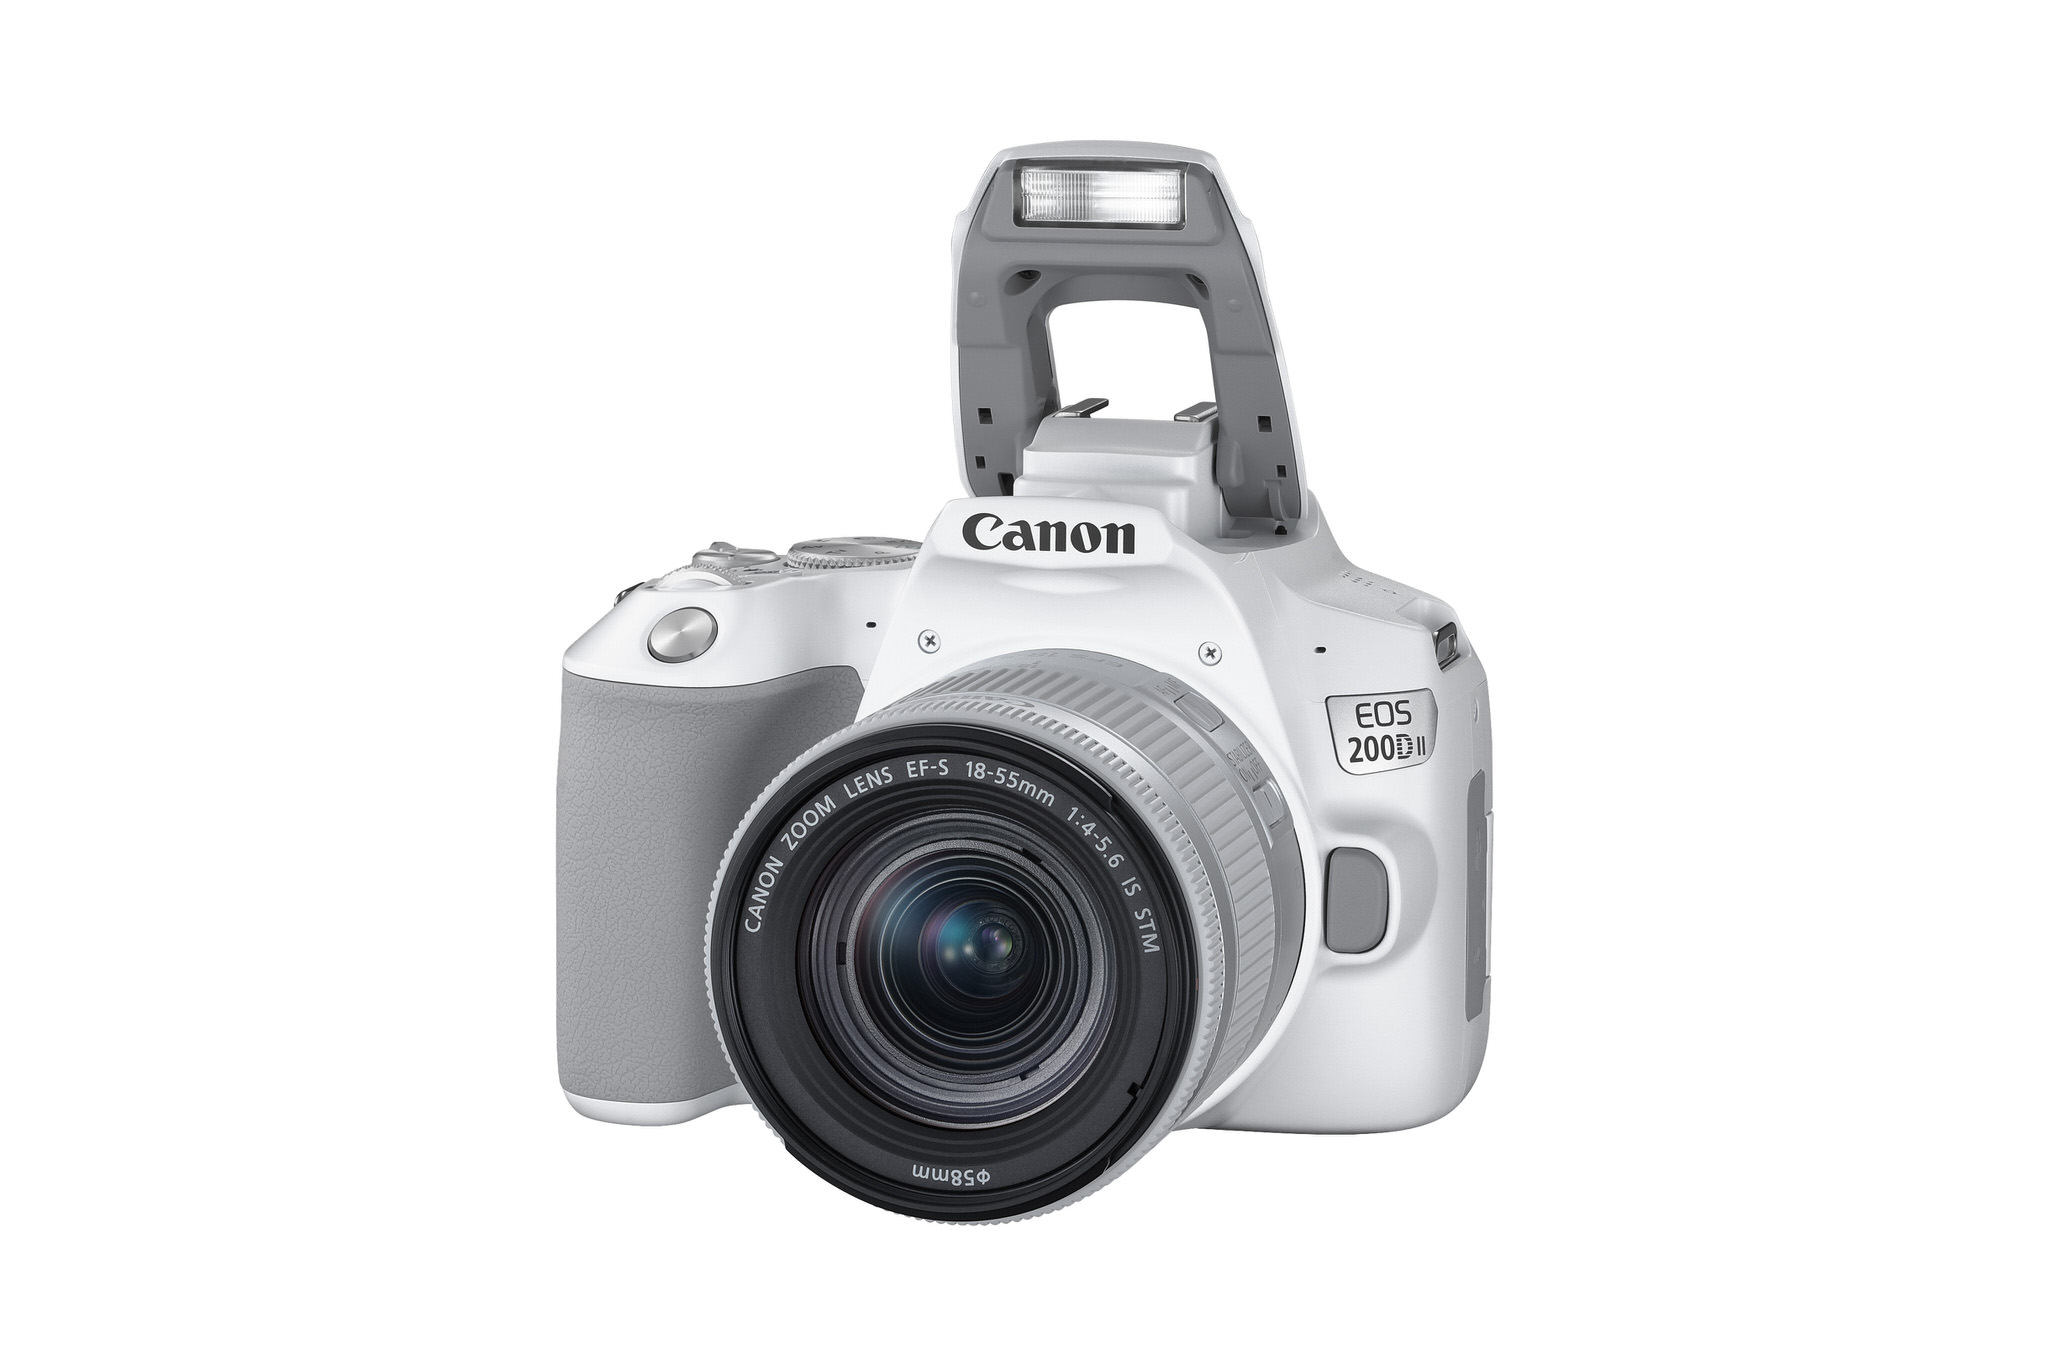 Canon ra mắt EOS 200D II, máy ảnh DSLR nhỏ gọn cho người mới, giá 16,5 triệu